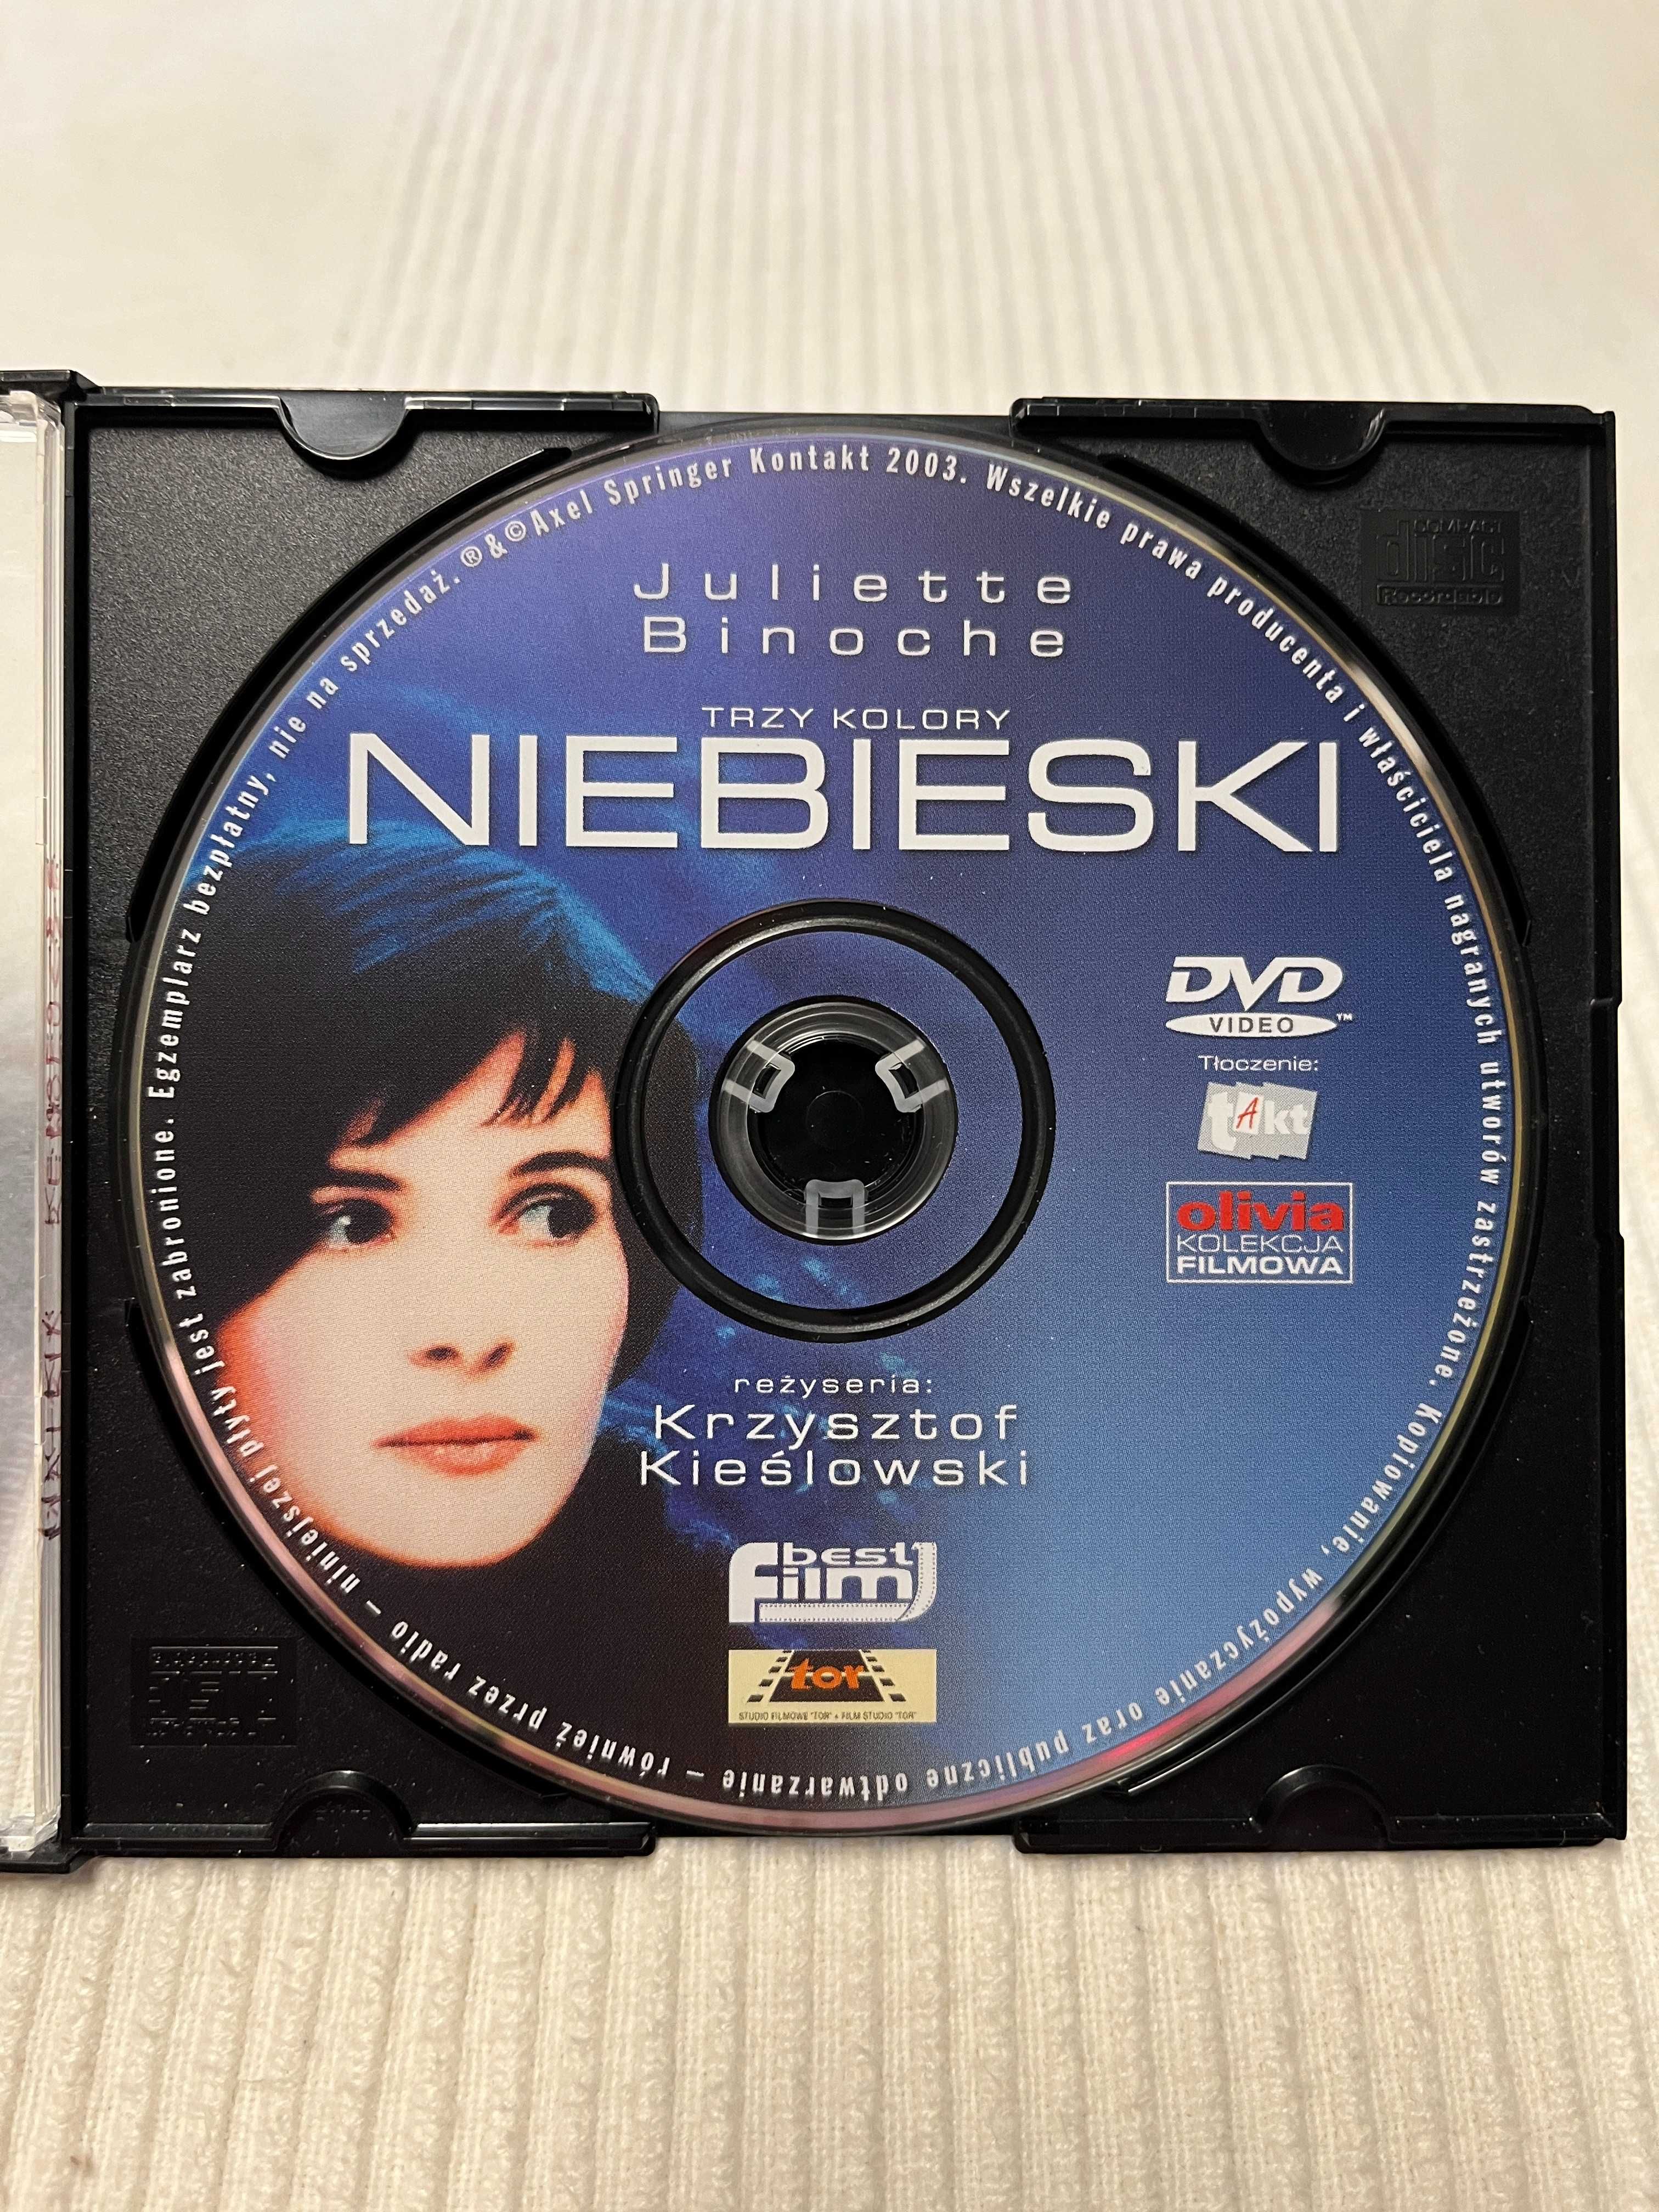 Trzy kolory NIEBIESKI film DVD 1993 Krzysztof Kieślowski kino movie